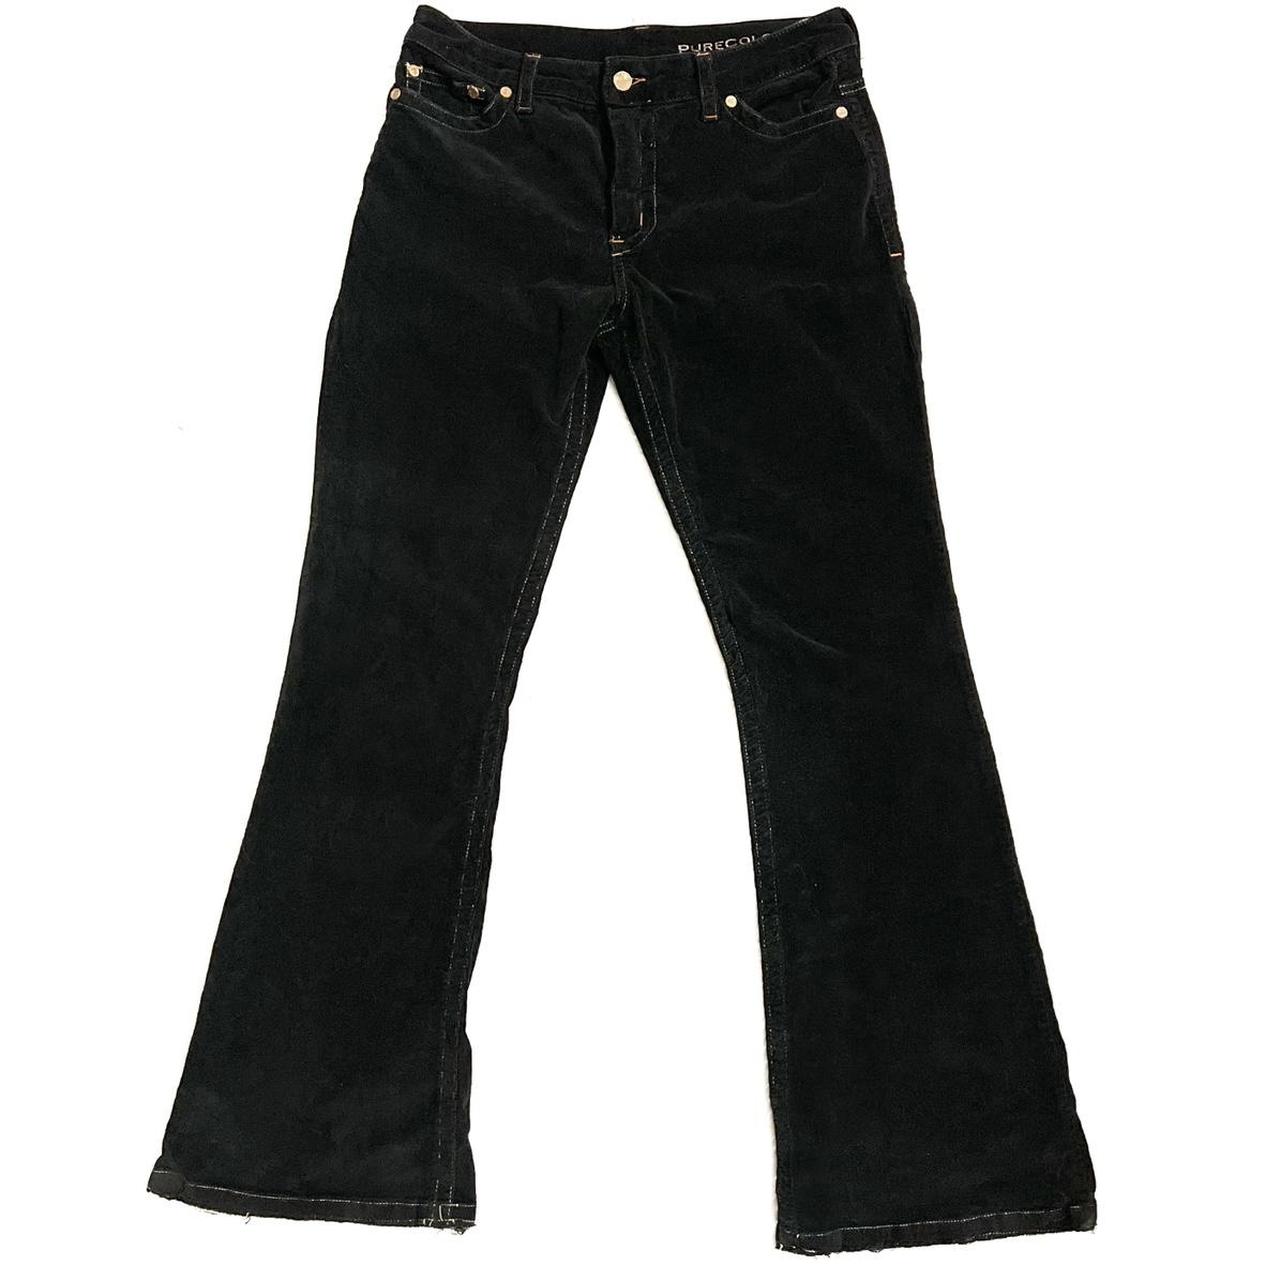 Purecolor corduroy bootcut jeans -size: 28 -inseam:... - Depop